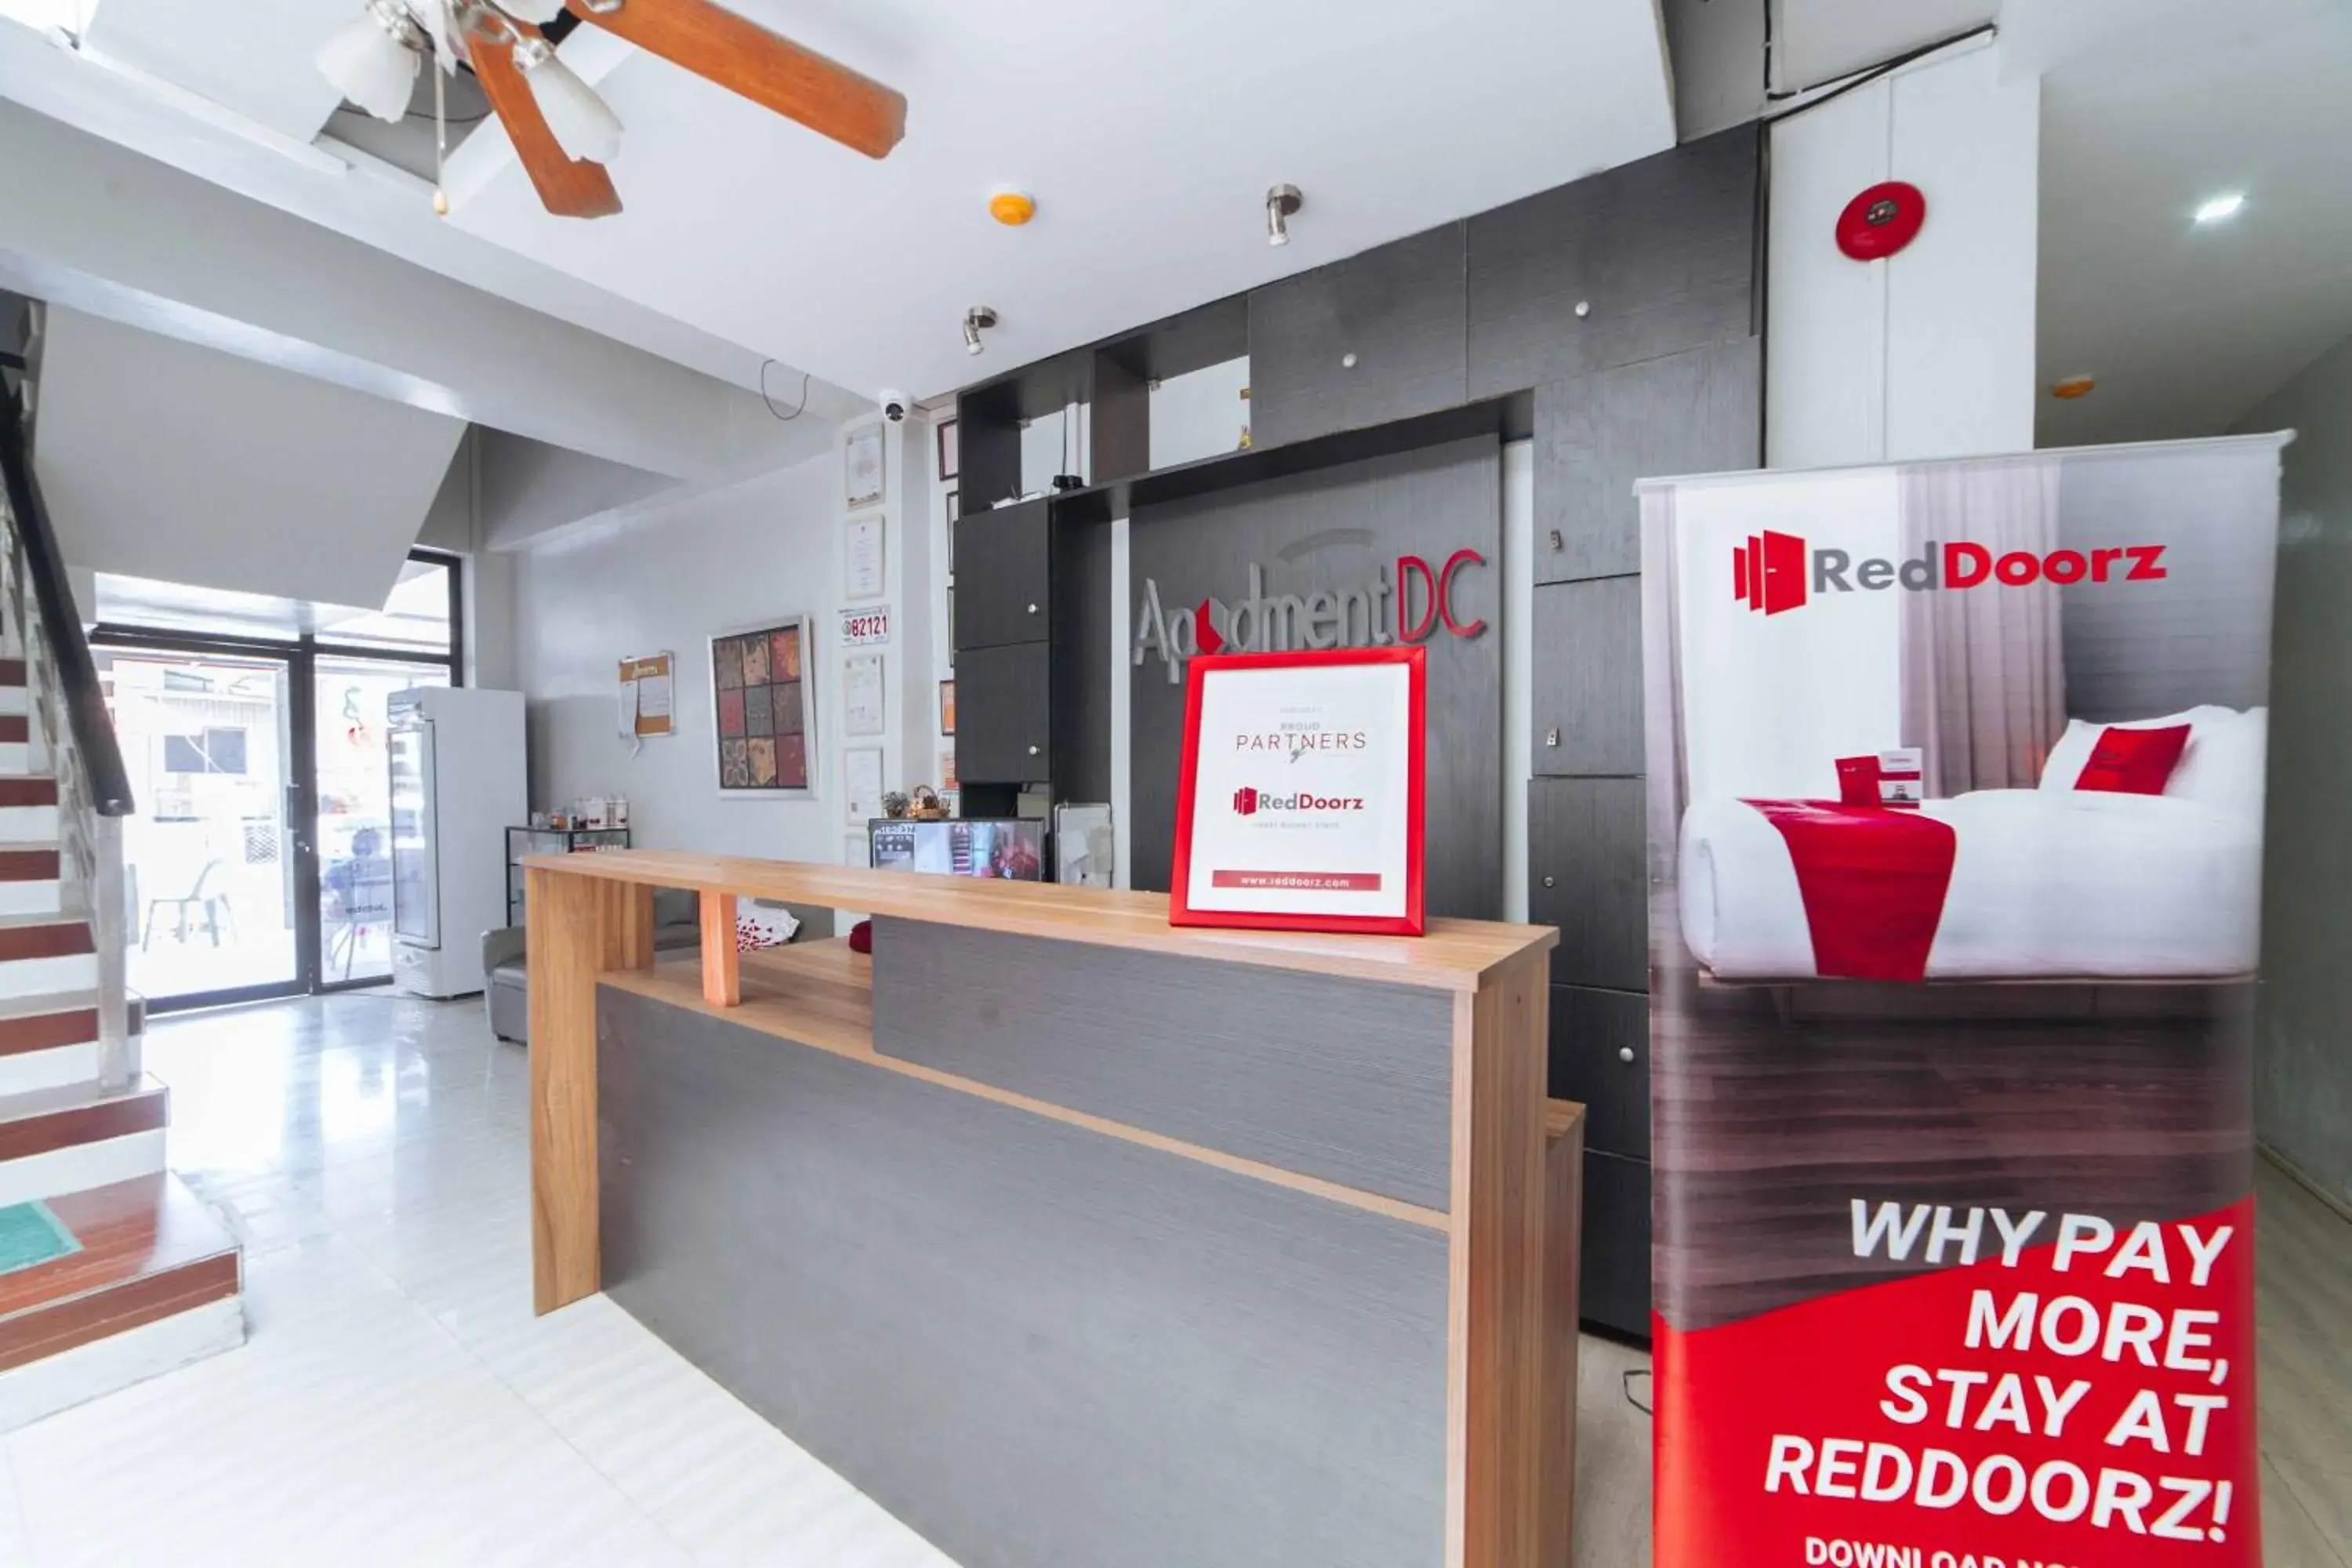 Lobby or reception, Lobby/Reception in RedDoorz near G Mall Bajada- Multiple Use Hotel